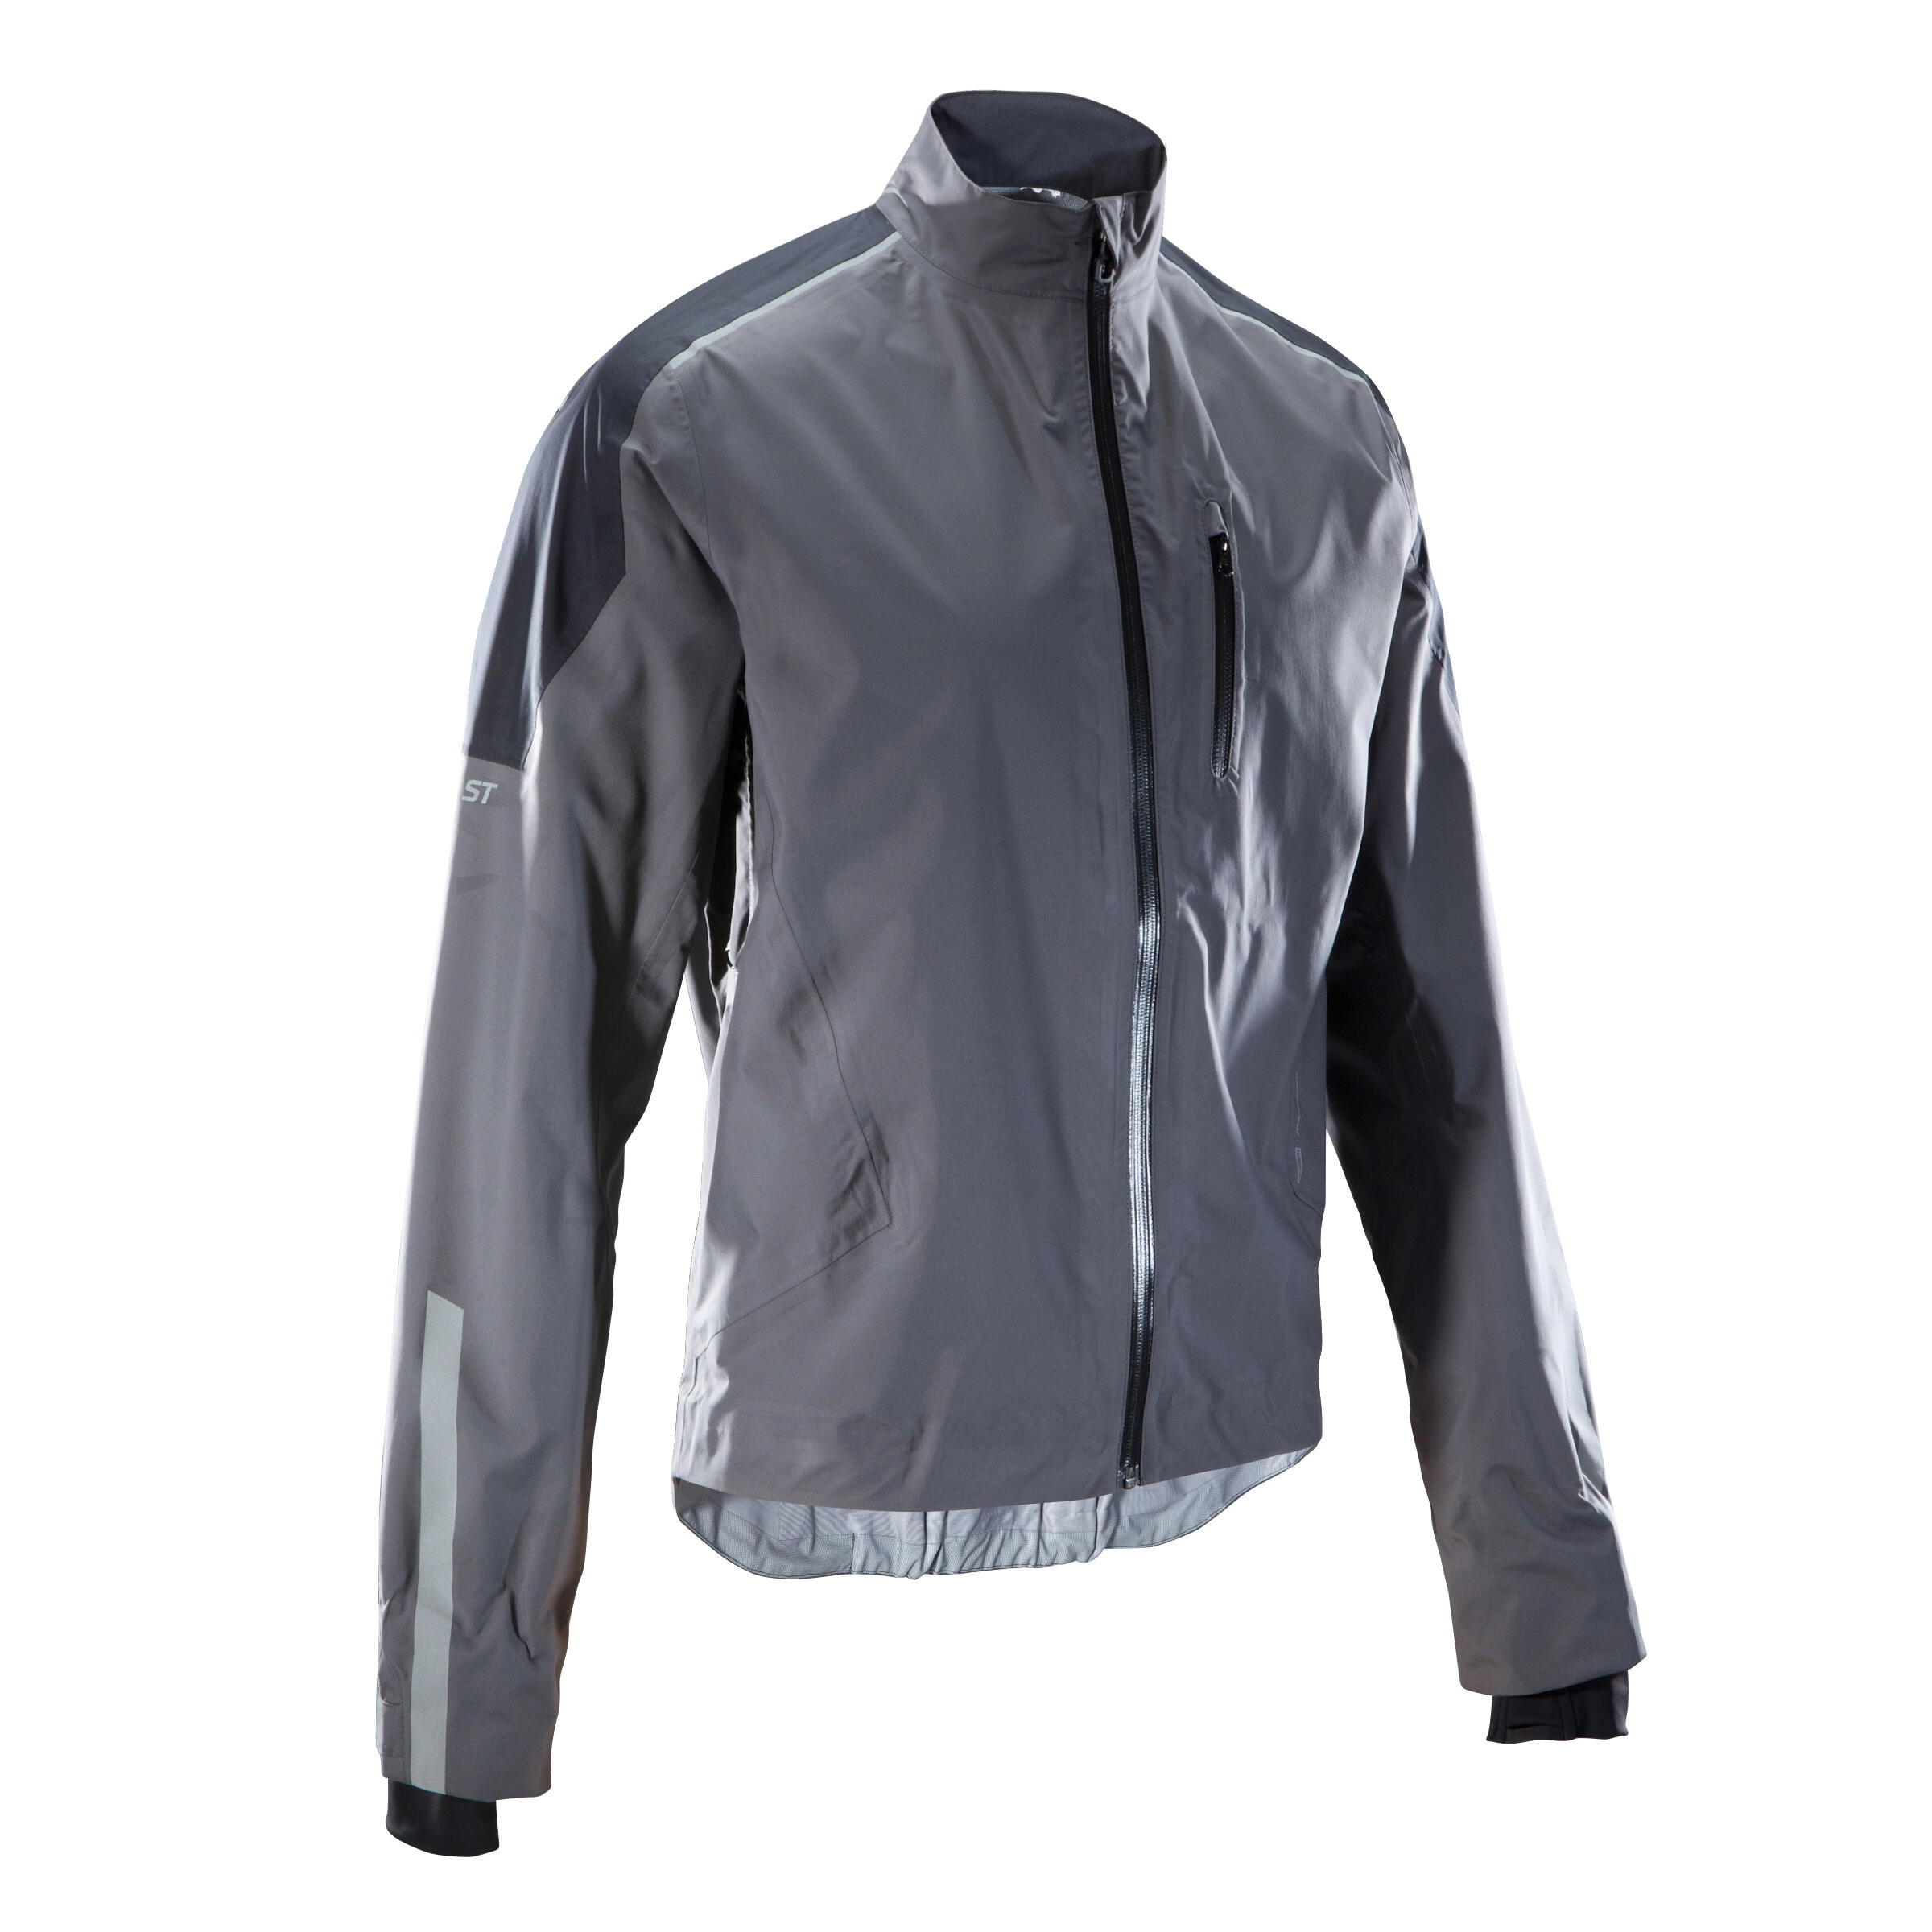 Jachetă membrană impermeabilă ST900 Mountain Bike La Oferta Online decathlon imagine La Oferta Online